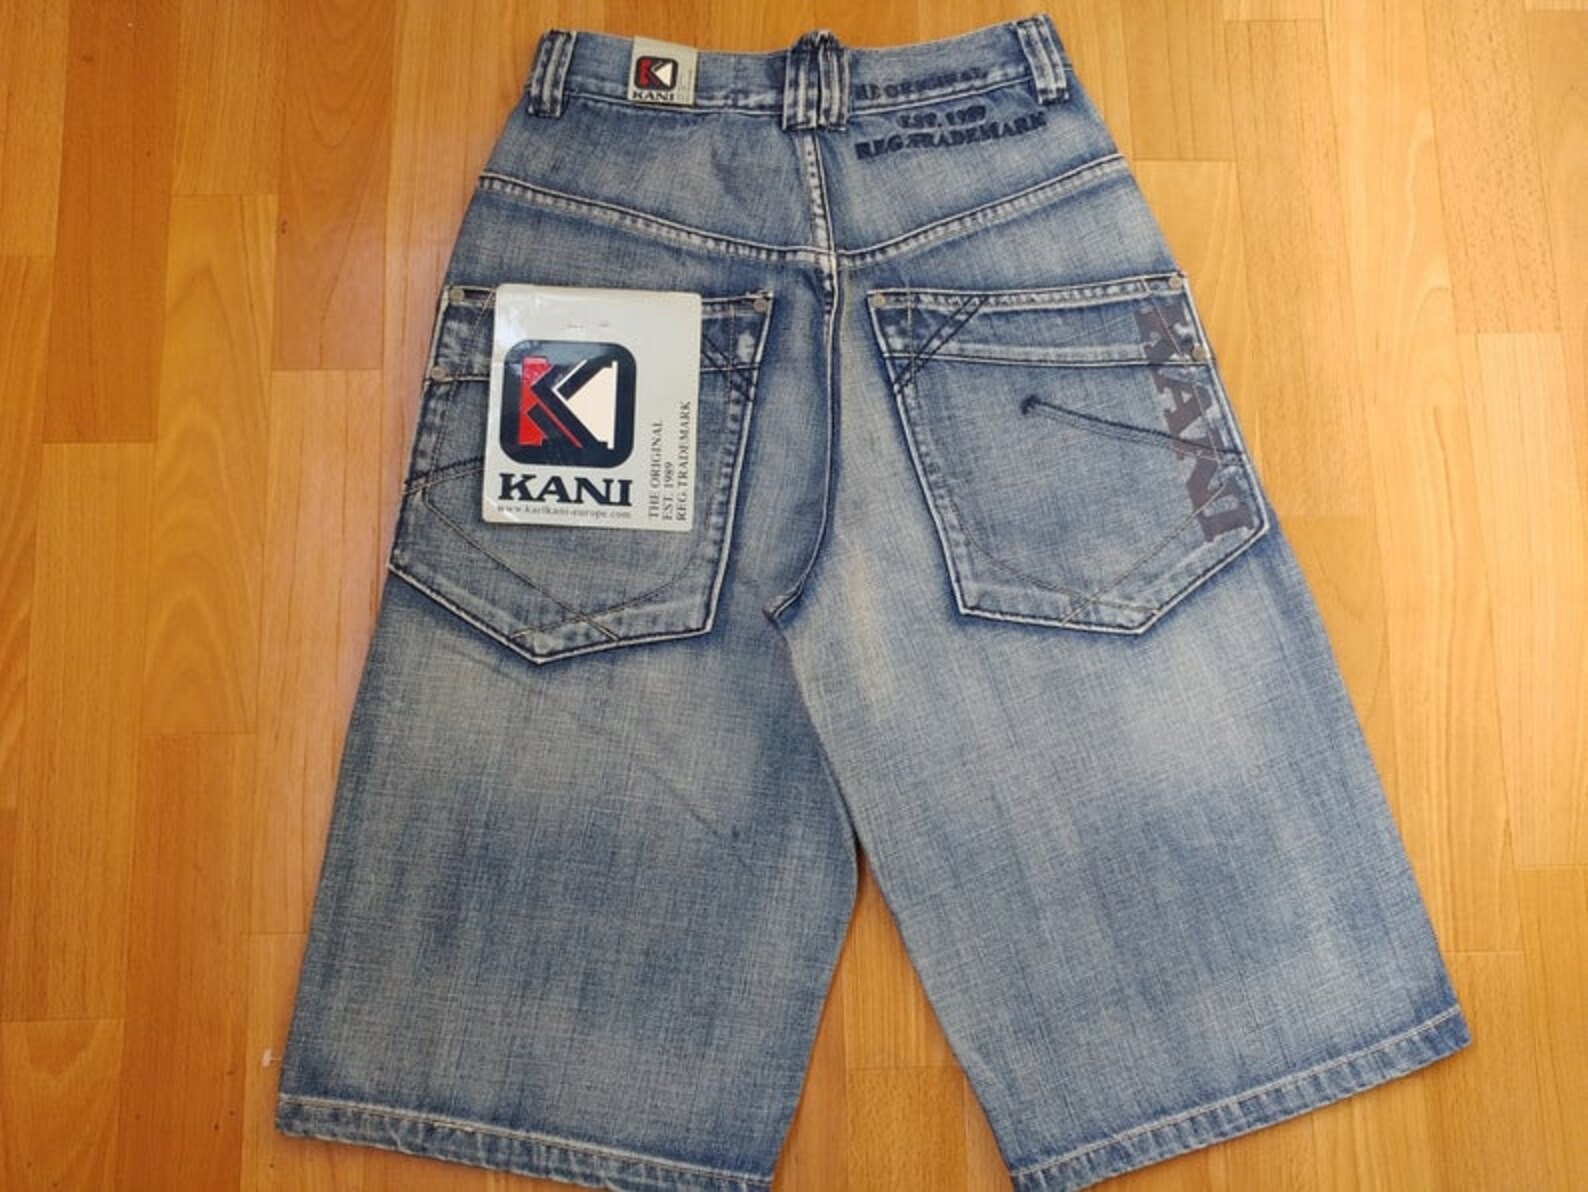 New KARL KANI Shorts Deadstock Blue Denim Jeans 90s Hip-hop - Etsy